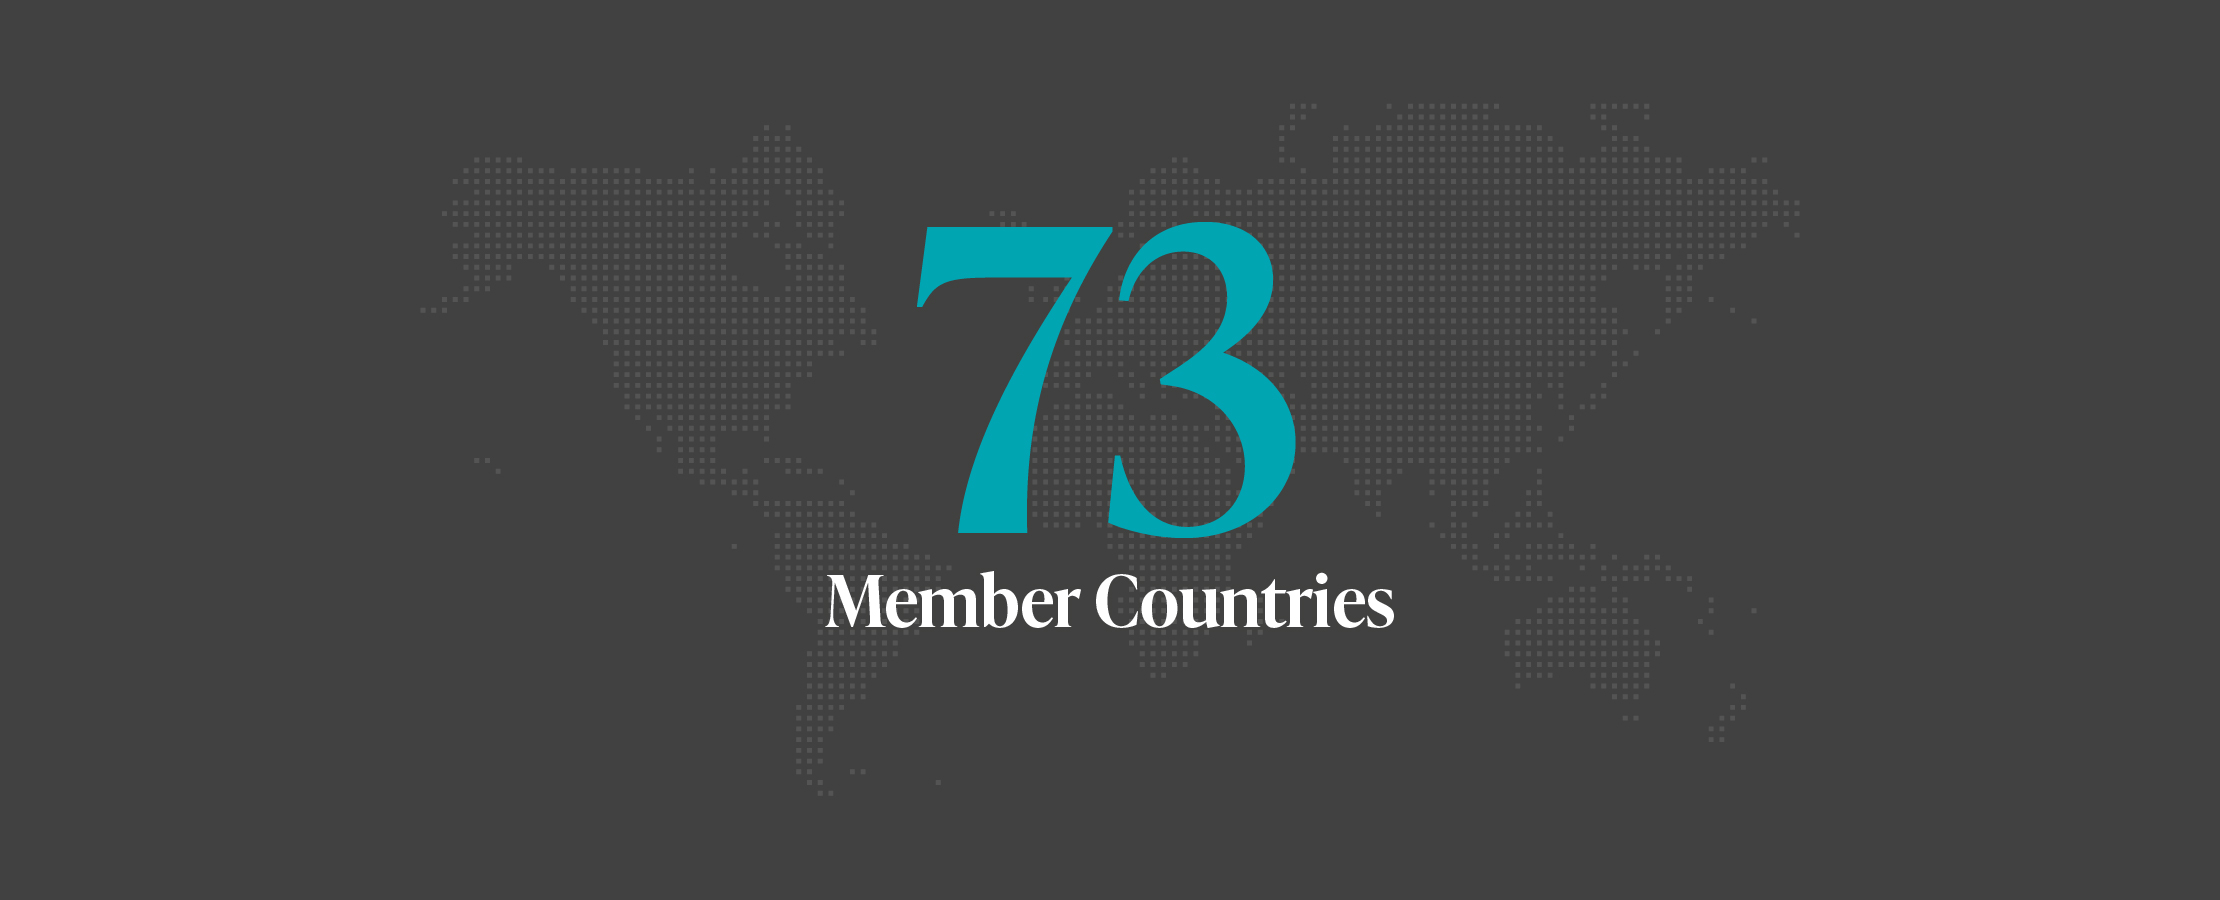 73 Member Countries